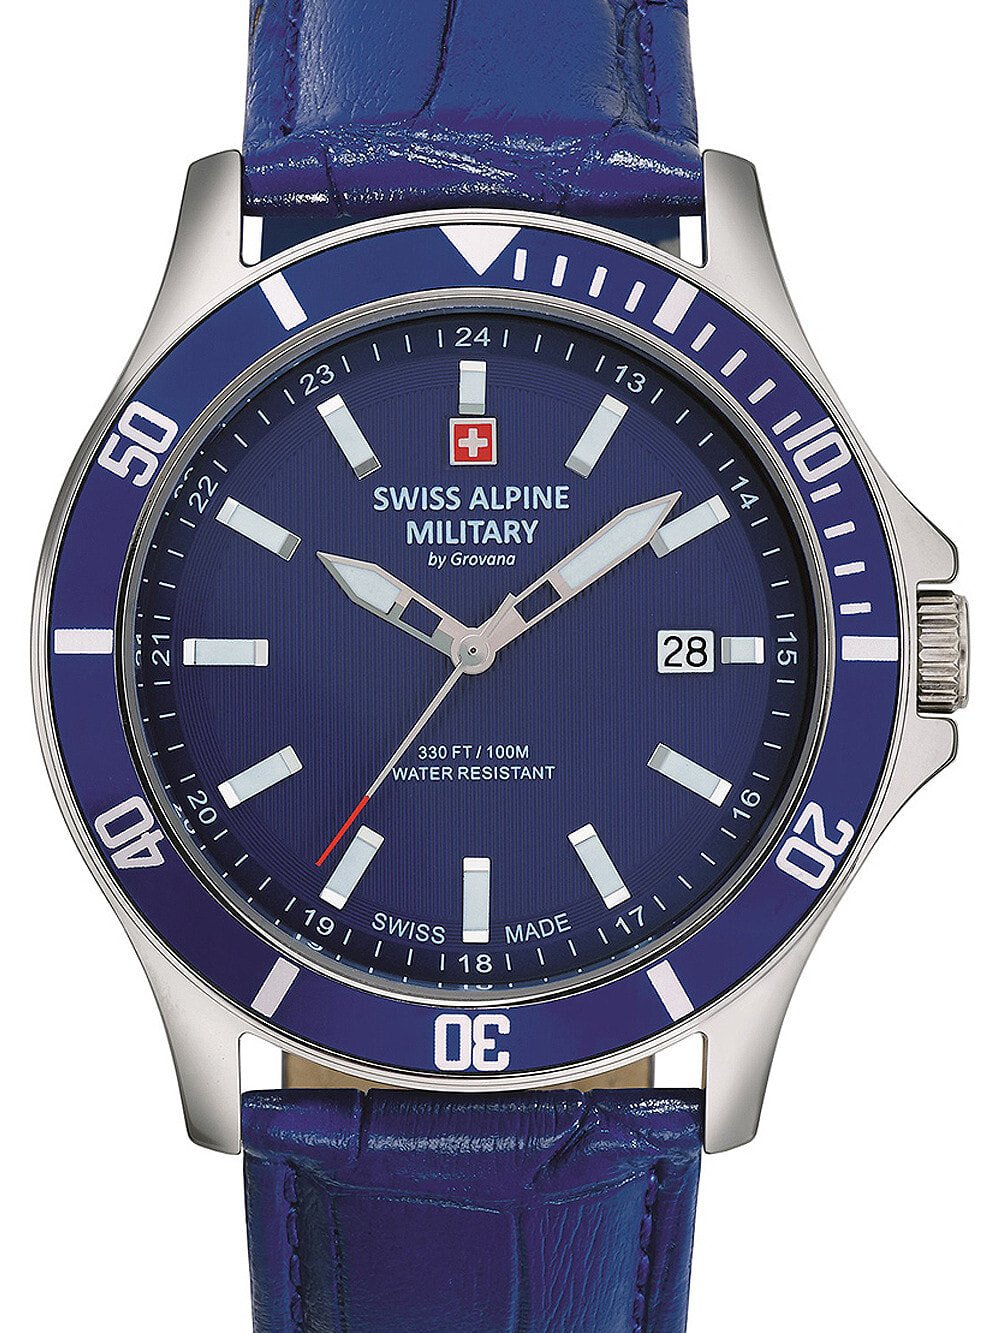 Мужские наручные часы с синим кожаным ремешком Swiss Alpine Military 7022.1535 mens 42mm 10ATM